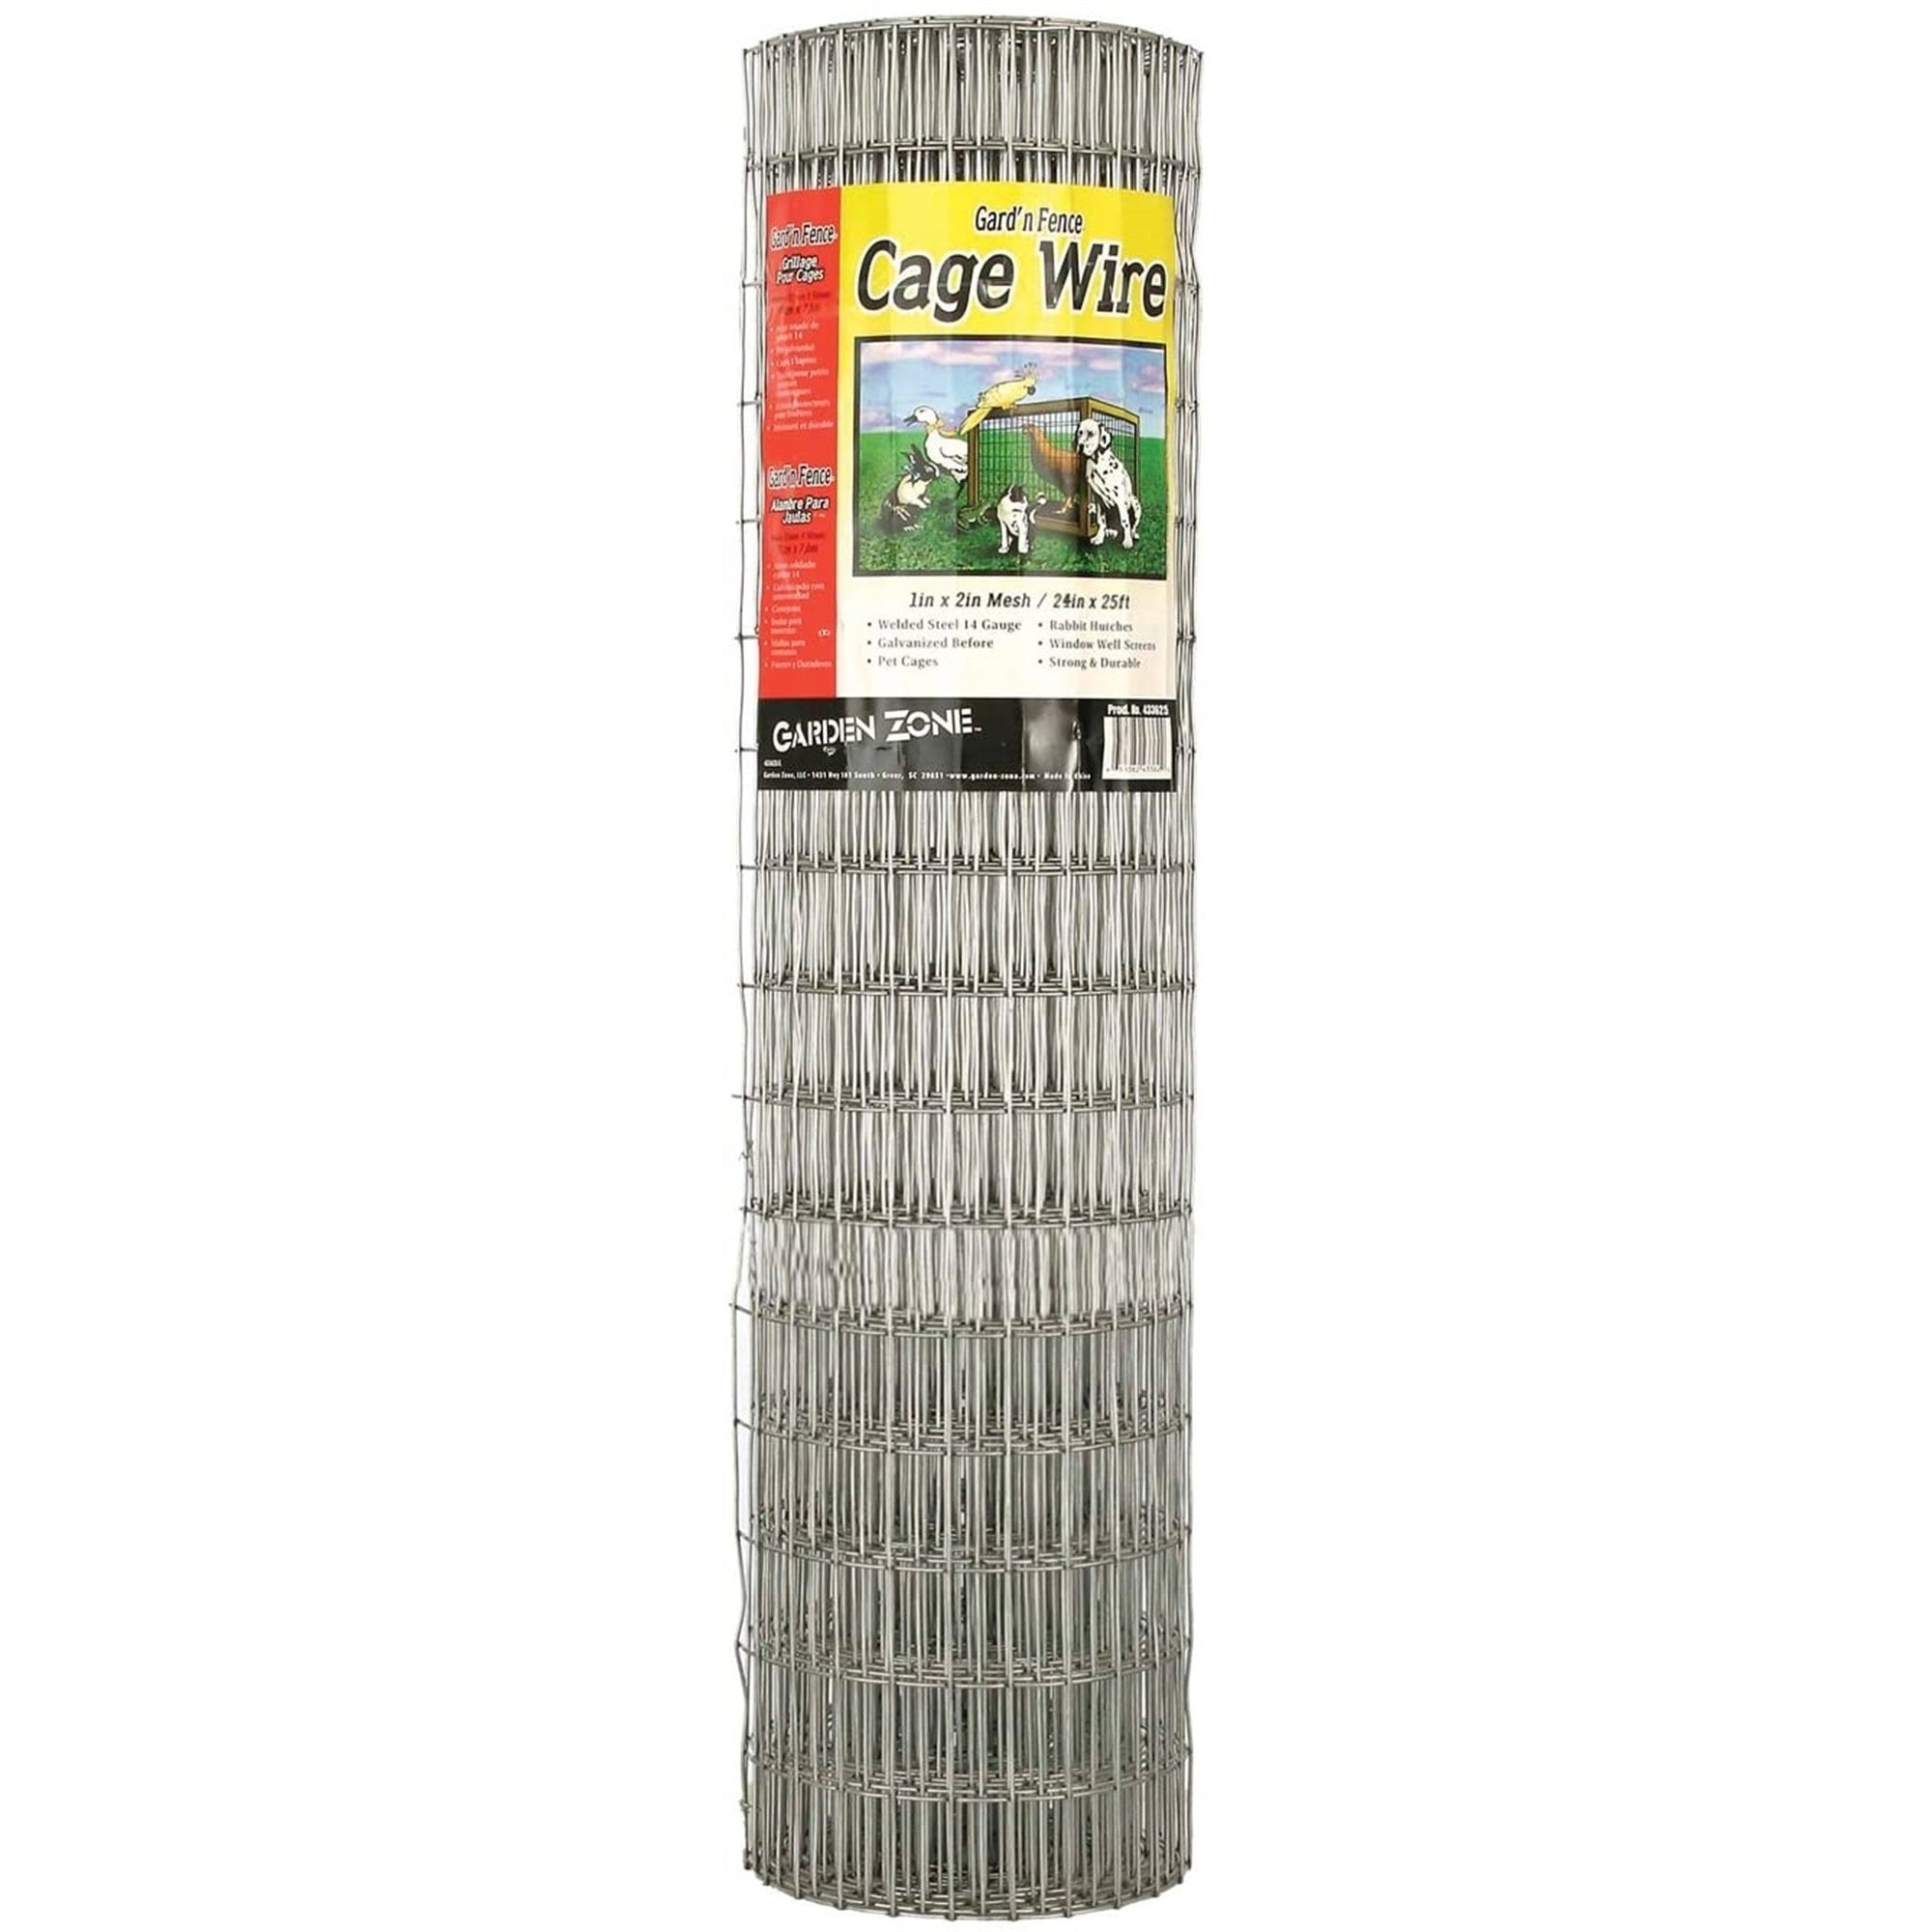 Garden Zone 1 x 2 Inch Mesh 14-Gauge Galvanized Wire Fence, 24" x 25'